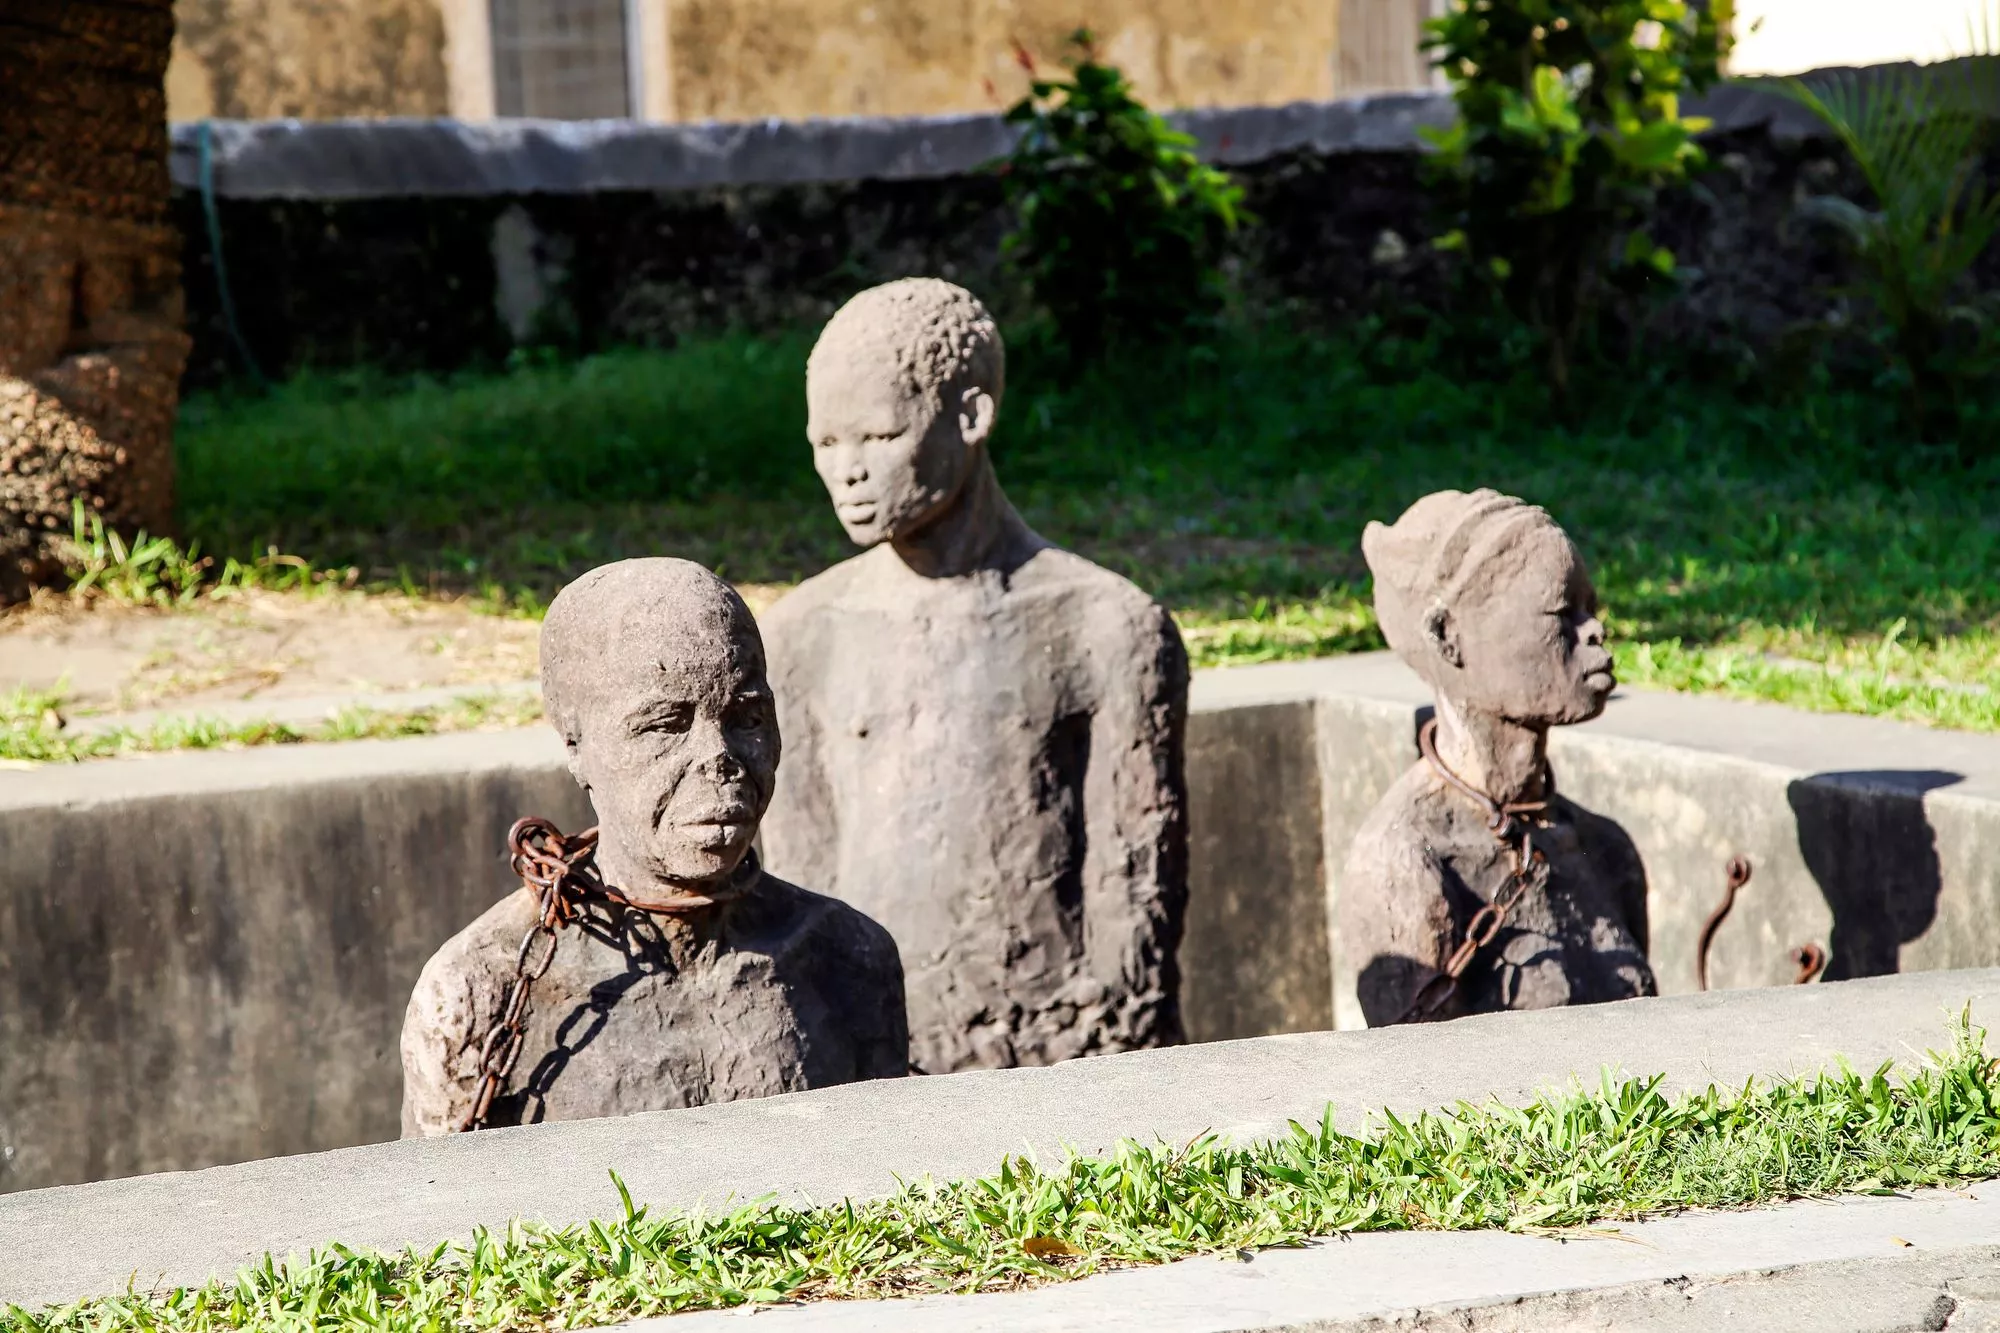 Sansibarissa käytiin avointa orjakauppaa vuoteen 1873 asti. Suurin orjamarkkinoista sijaitsi Stone Townissa, jossa on nyt pysäyttävä muistomerkki. © Sanna Wallenius